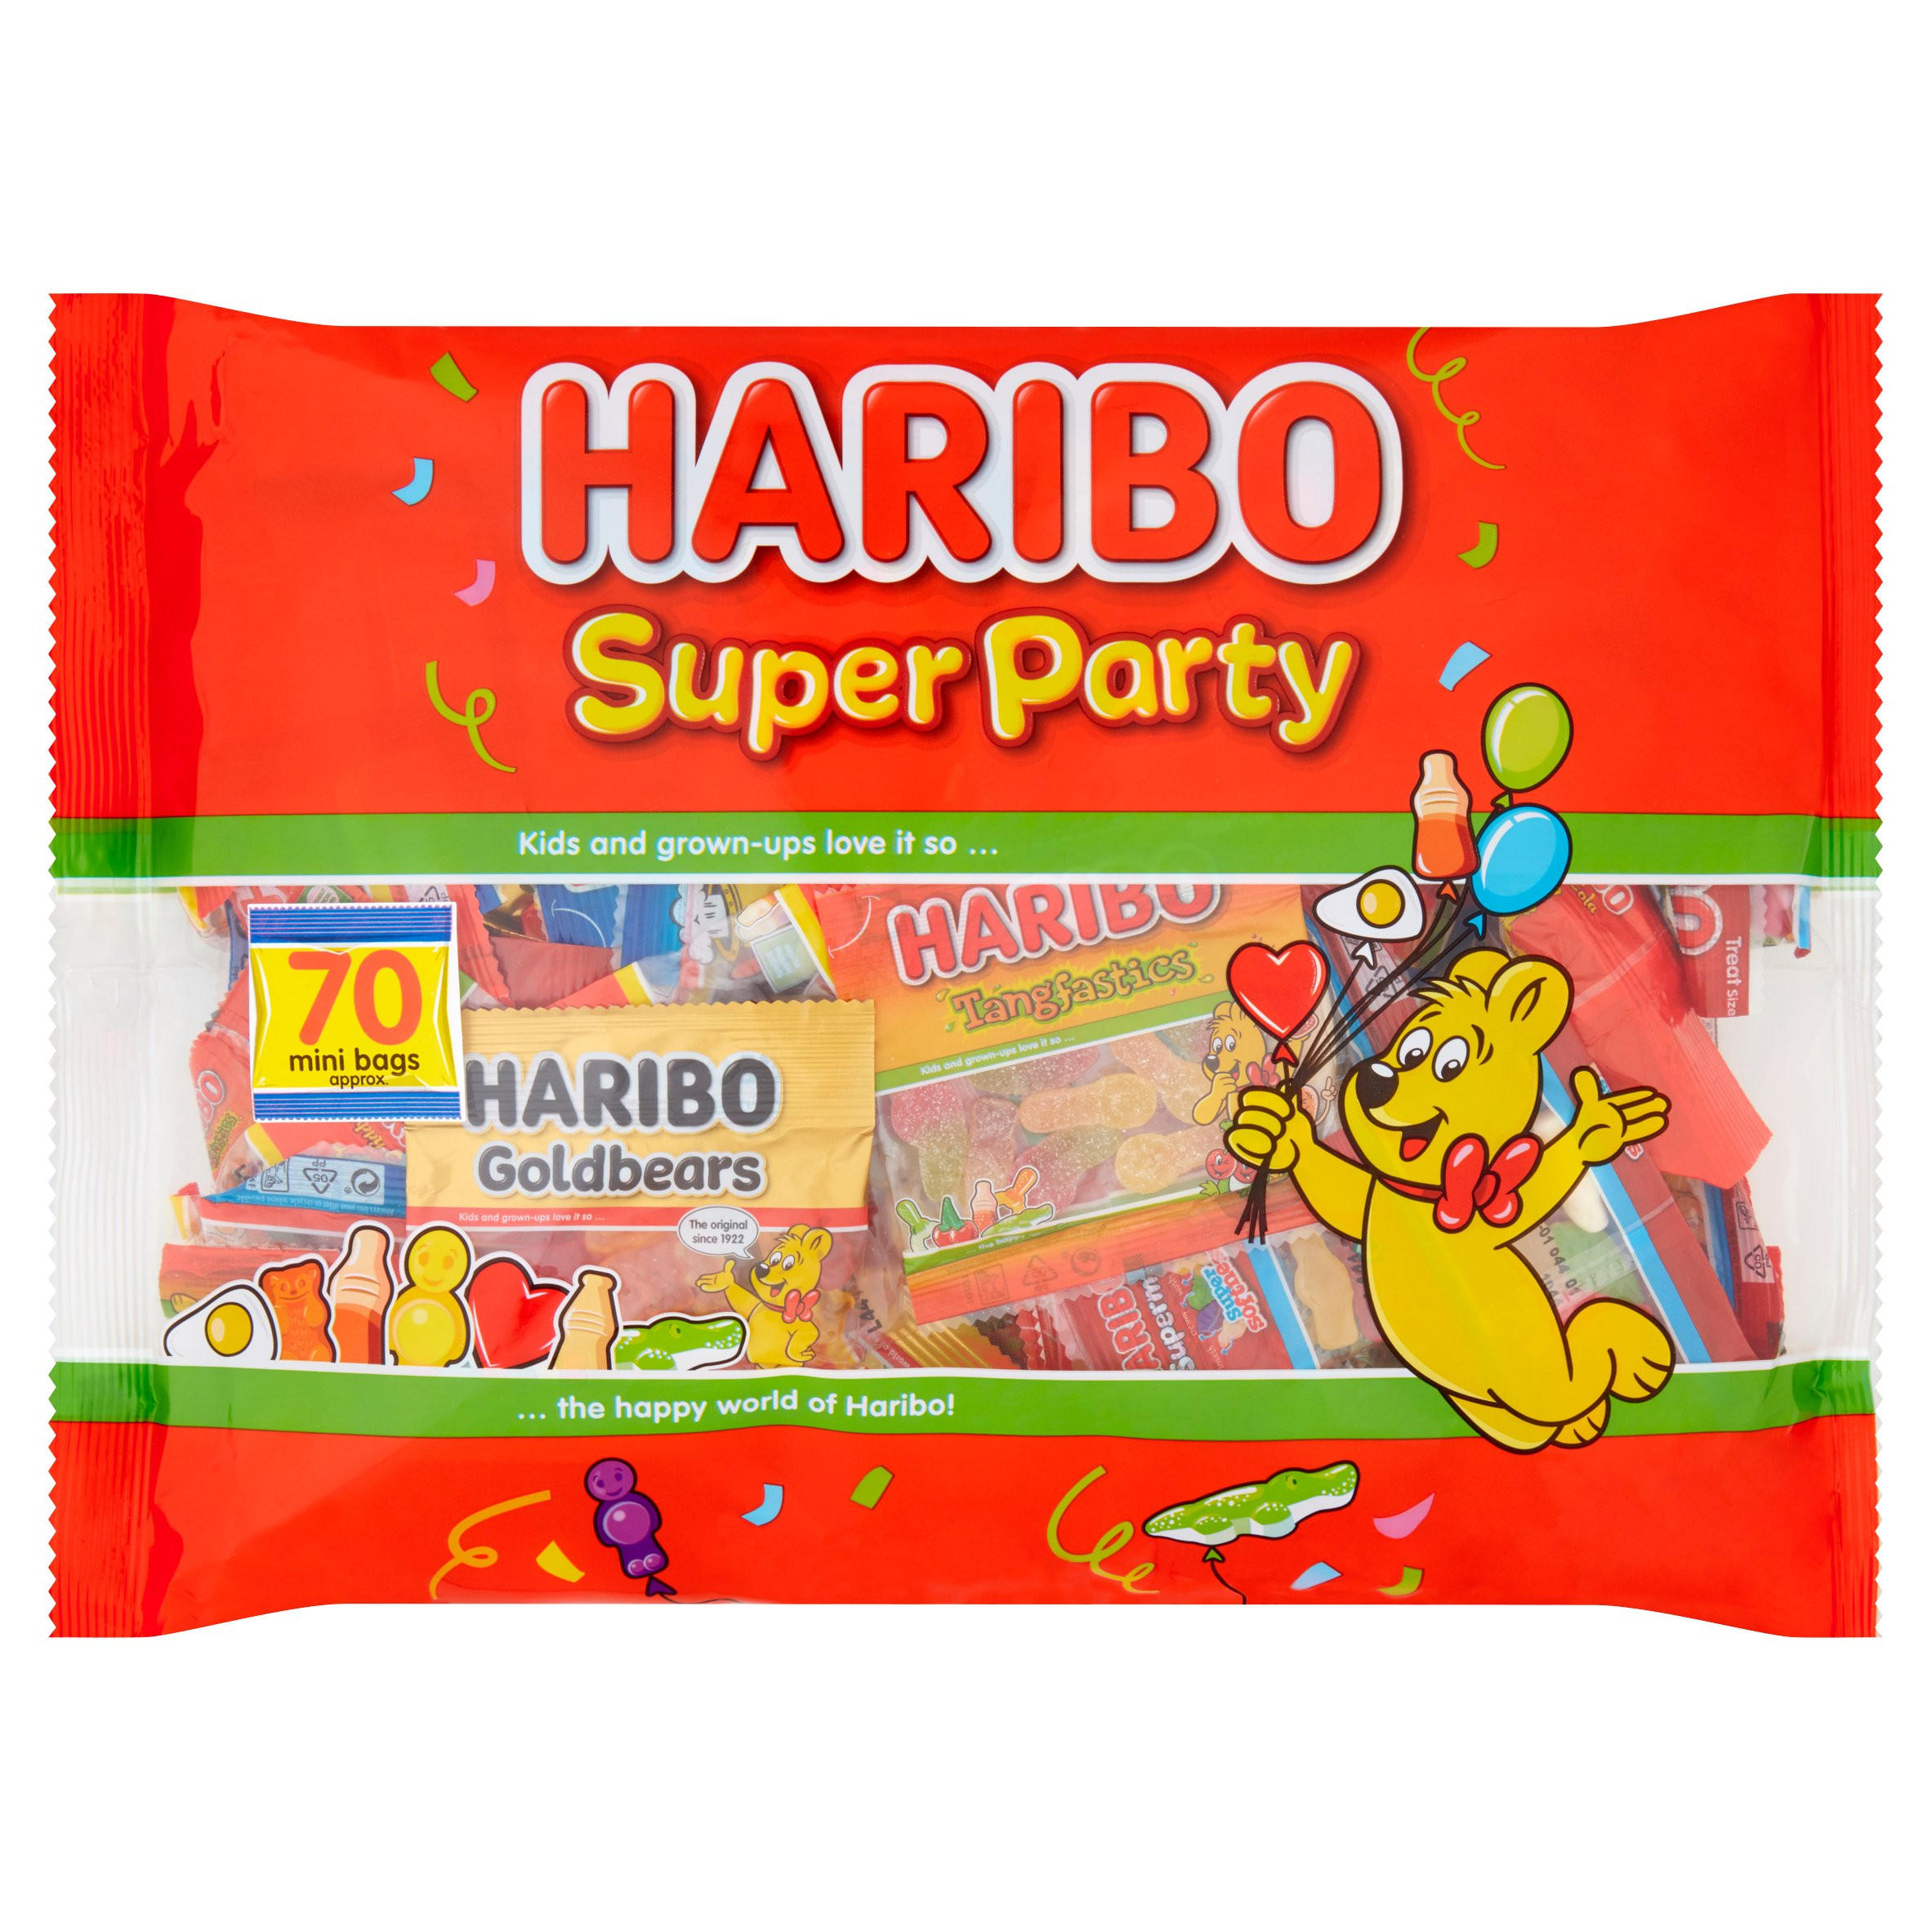 HARIBO Super Party Multipack Bag 1.12kg | Sweets | Iceland Foods